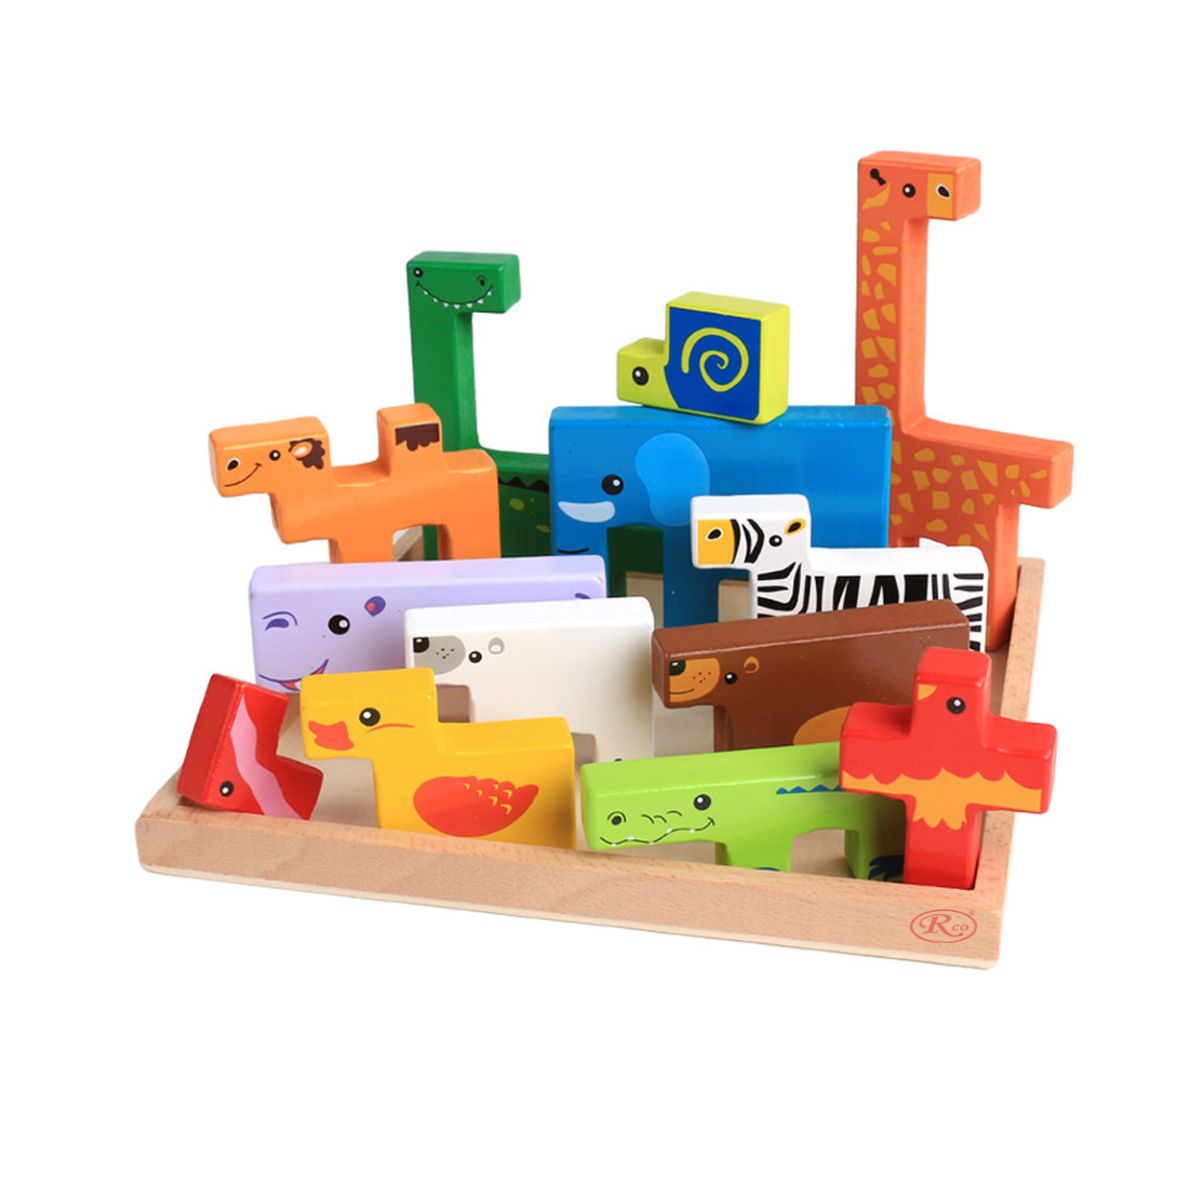 Jucarii interior - Joc educativ din lemn - Tetris - cu animale 3D, WD 2511, hectarul.ro